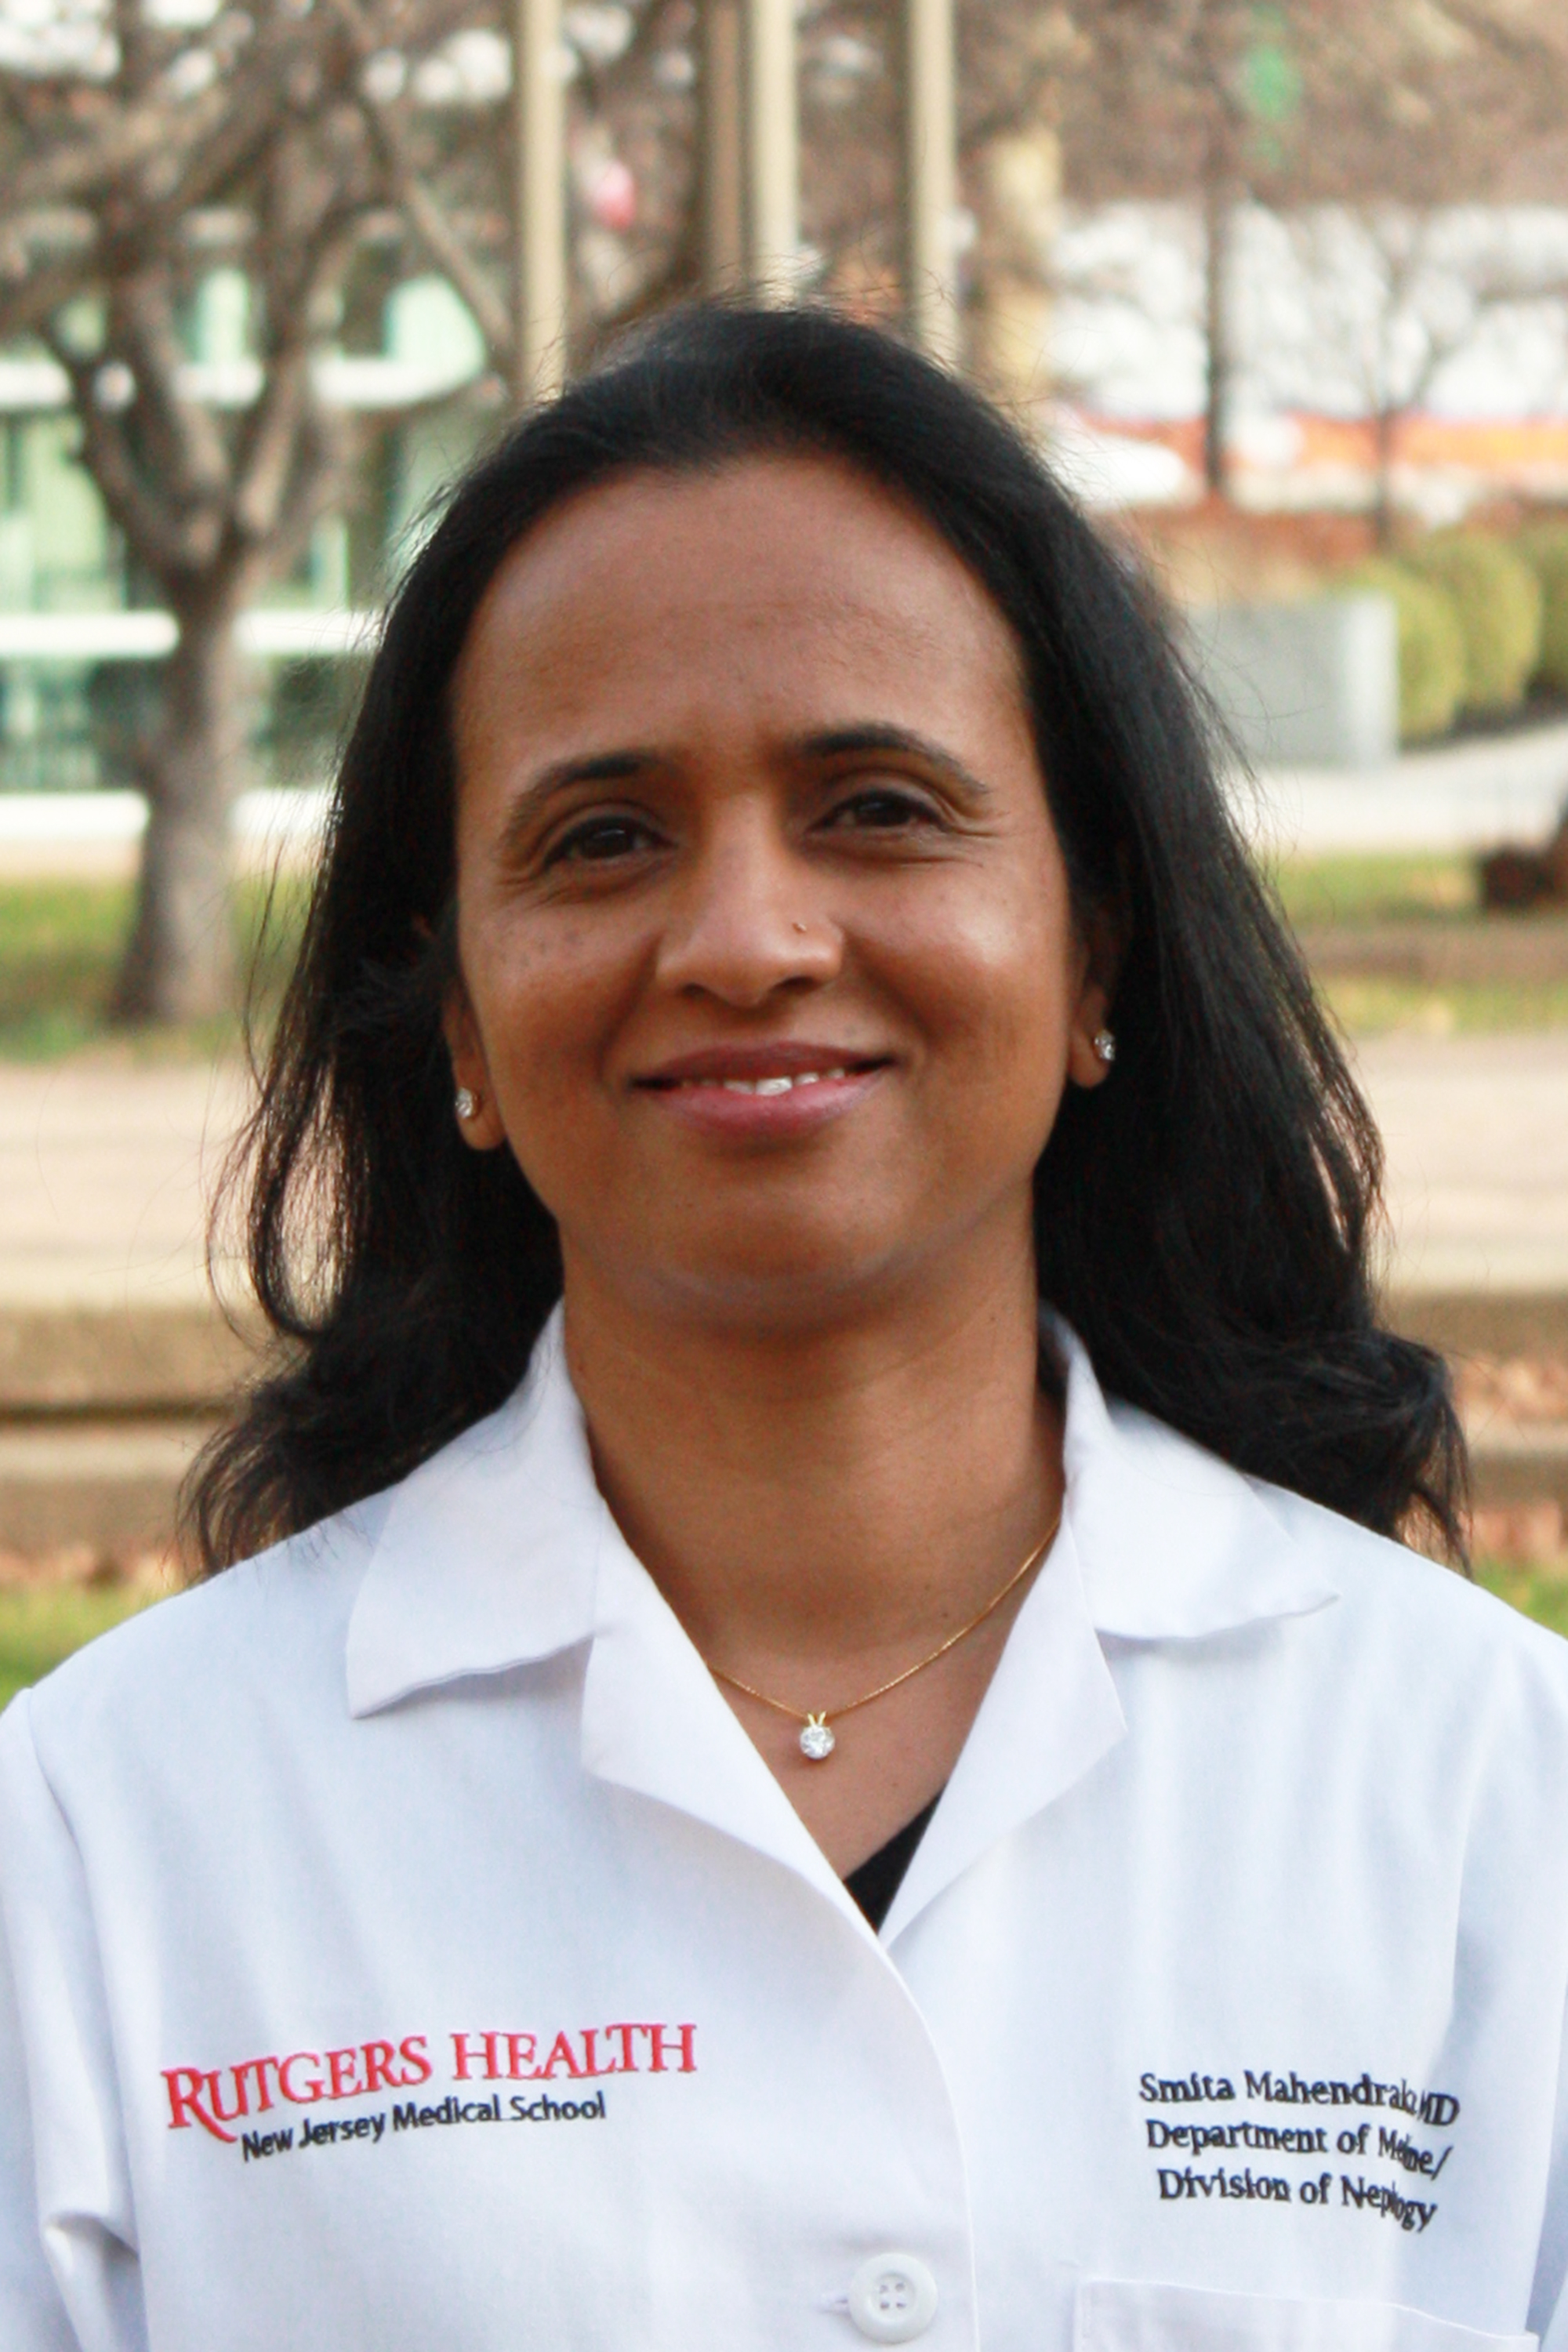 Smita Mahendrakar, MD